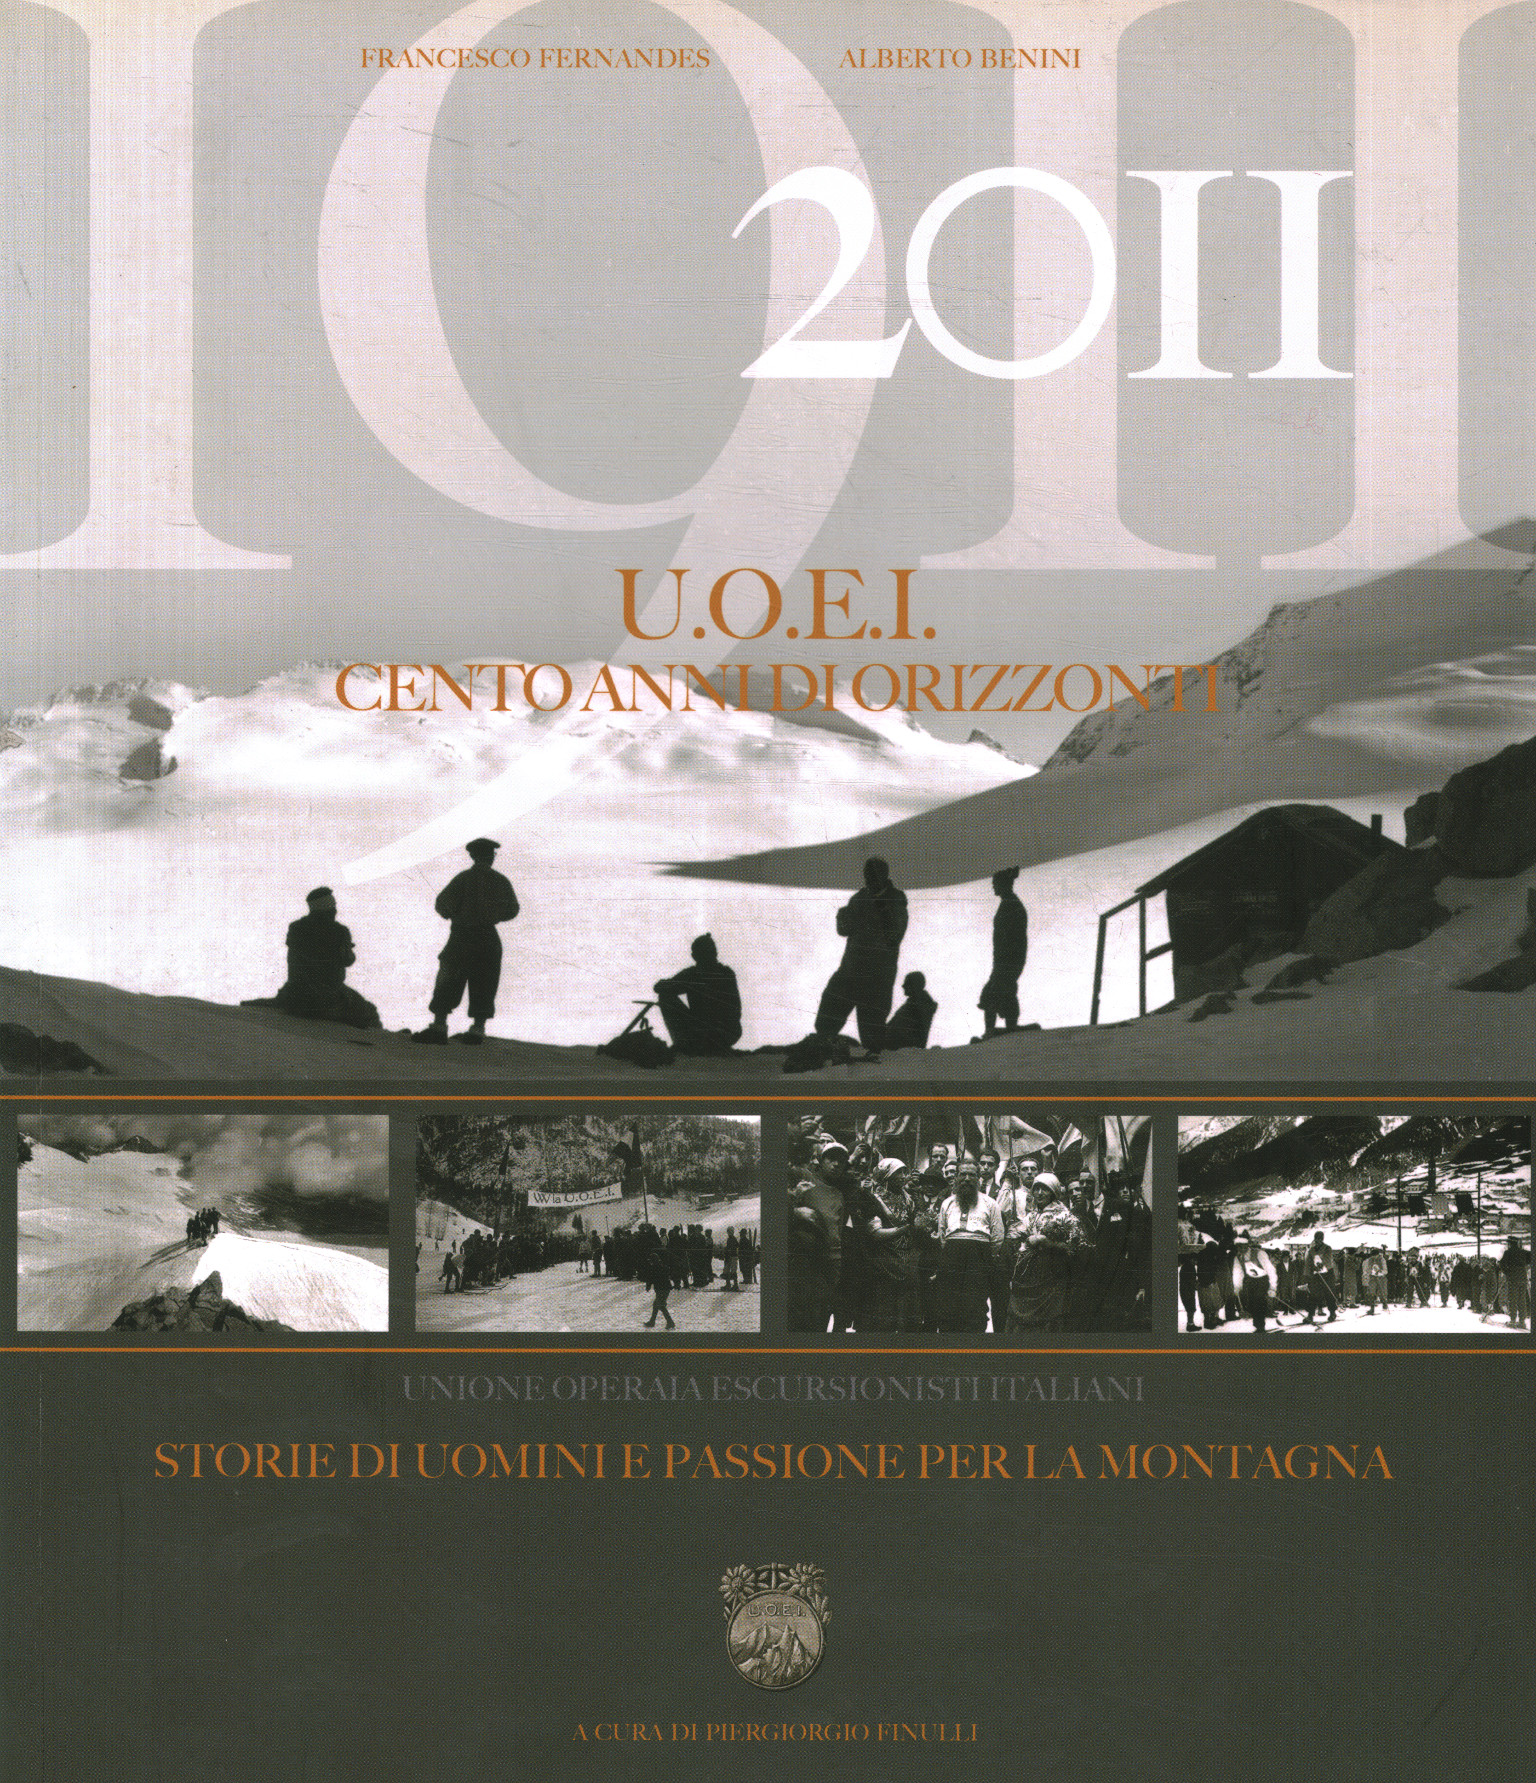 1911-2011 U.O.E.I. Cent ans d'horizon